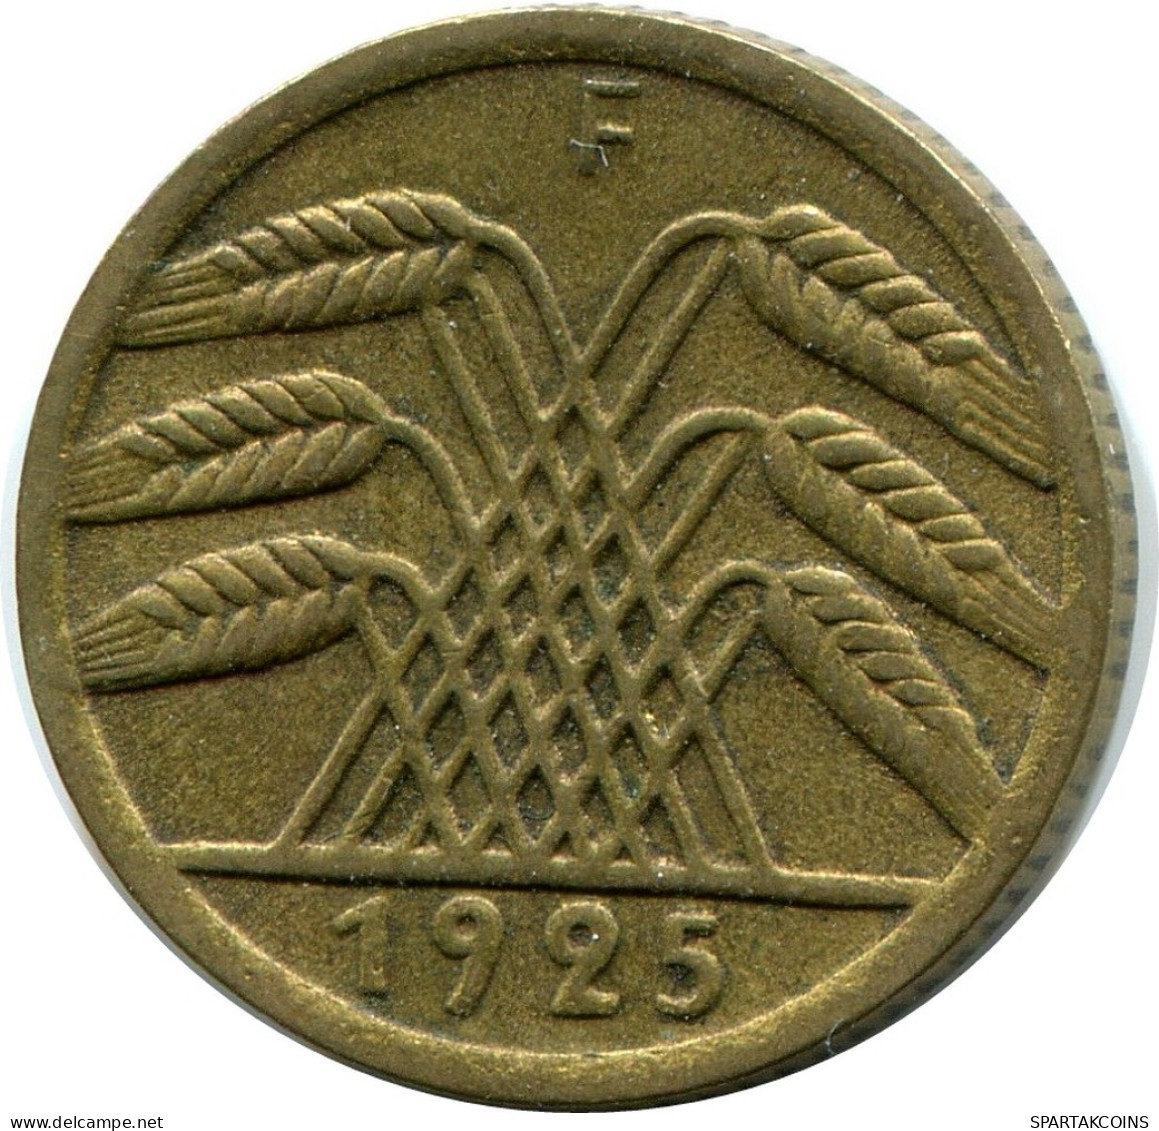 5 REICHSPFENNIG 1925 F GERMANY Coin #DB877.U.A - 5 Renten- & 5 Reichspfennig